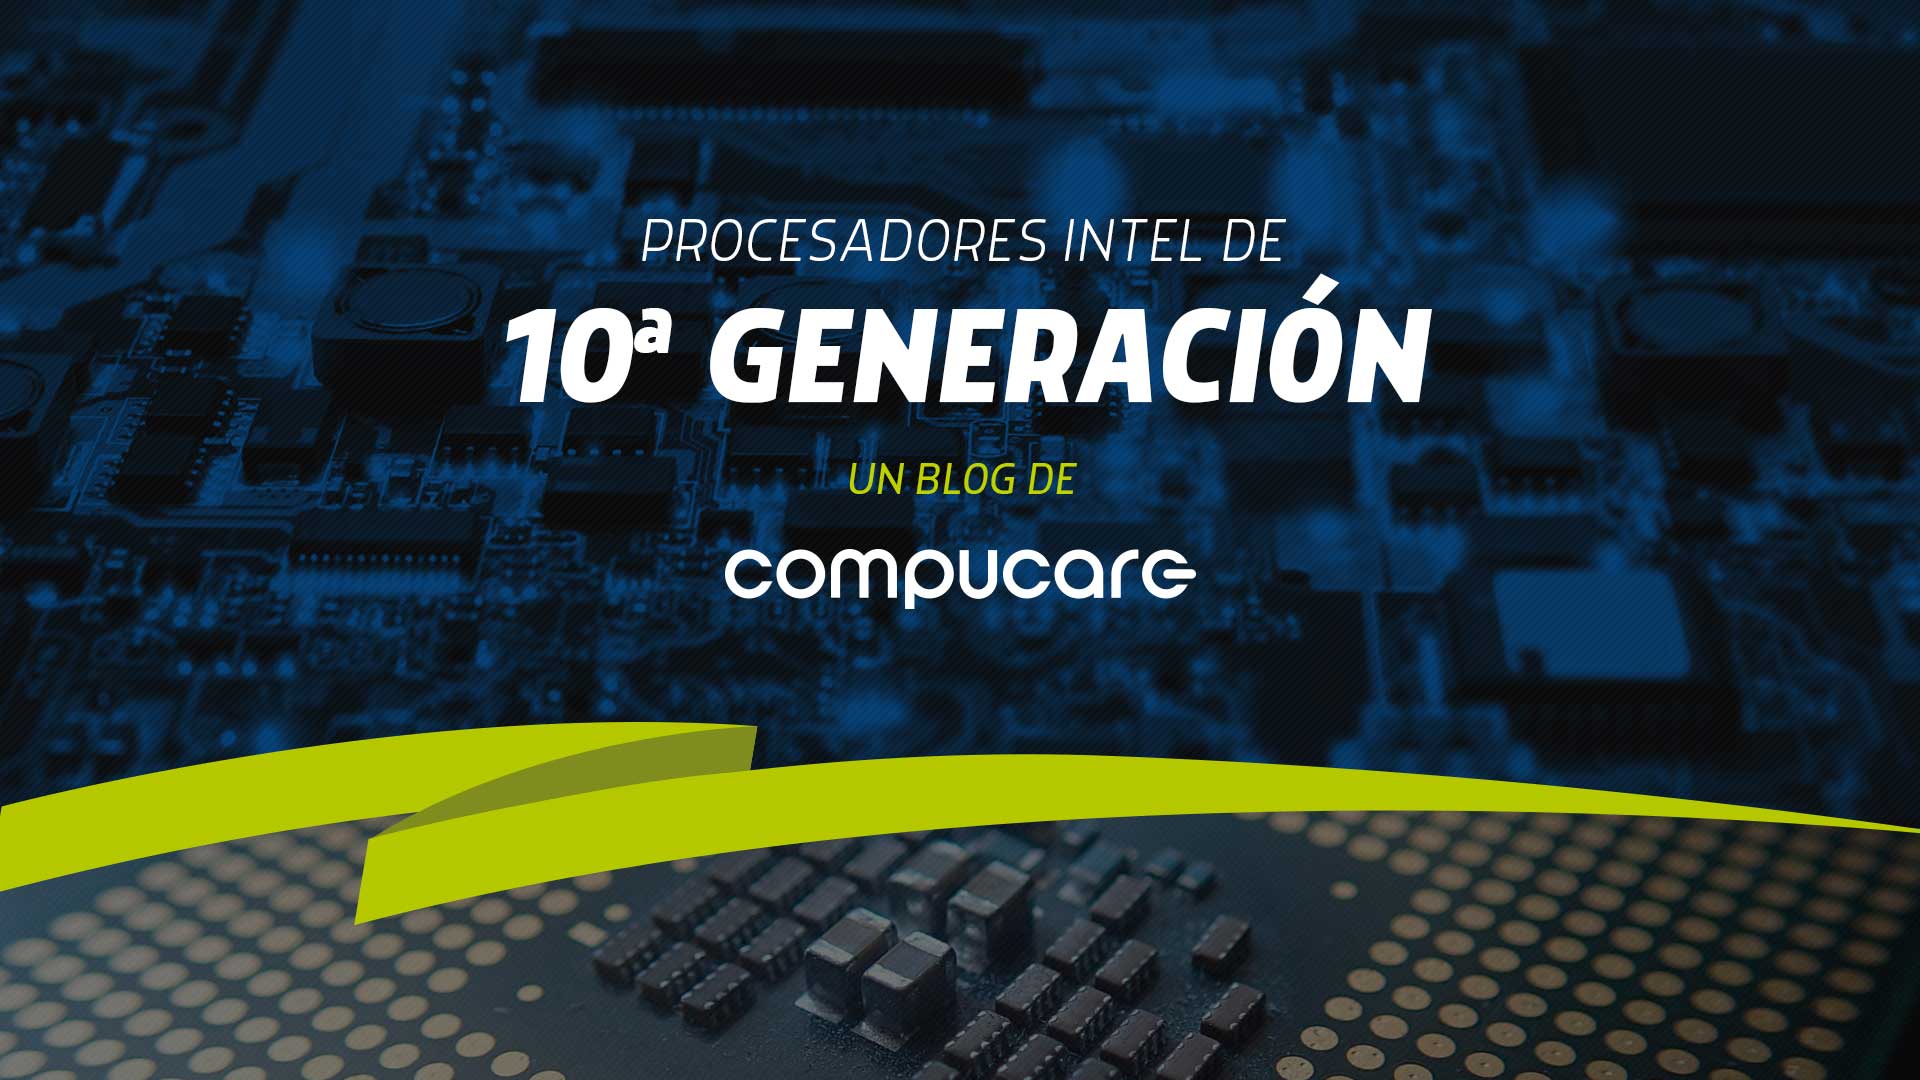 Procesadores intel de 10a generación